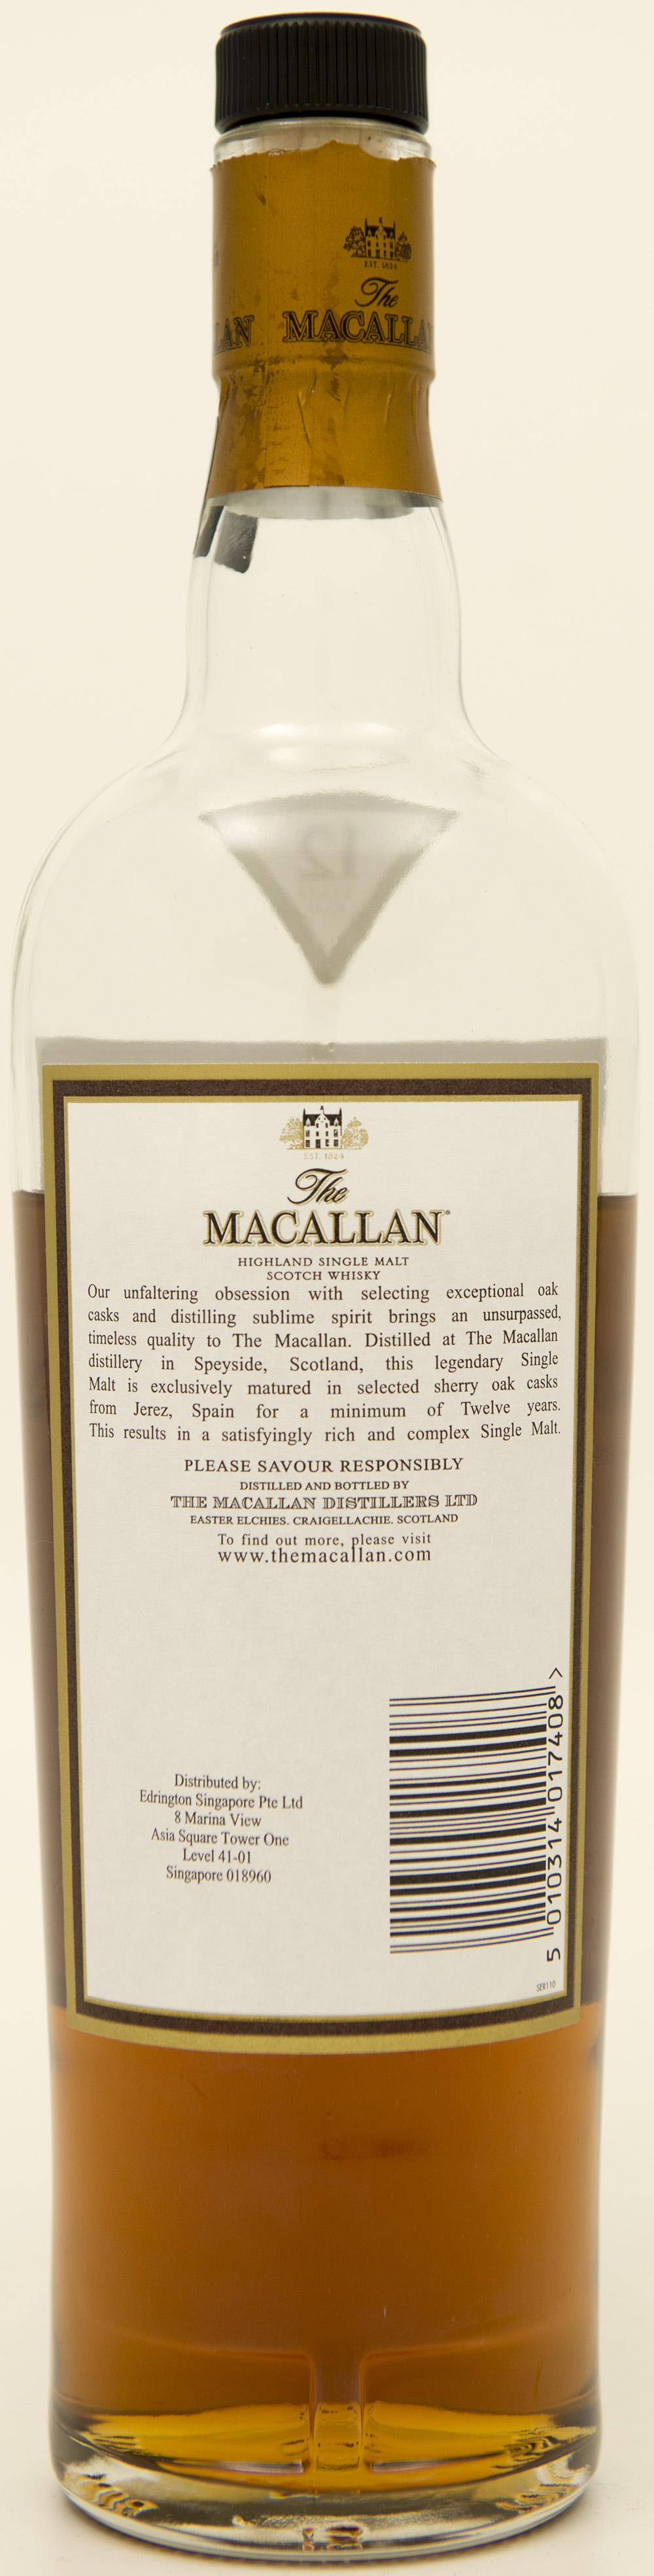 Billede: DSC_3658 - The MacAllan 12 - bottle back.jpg